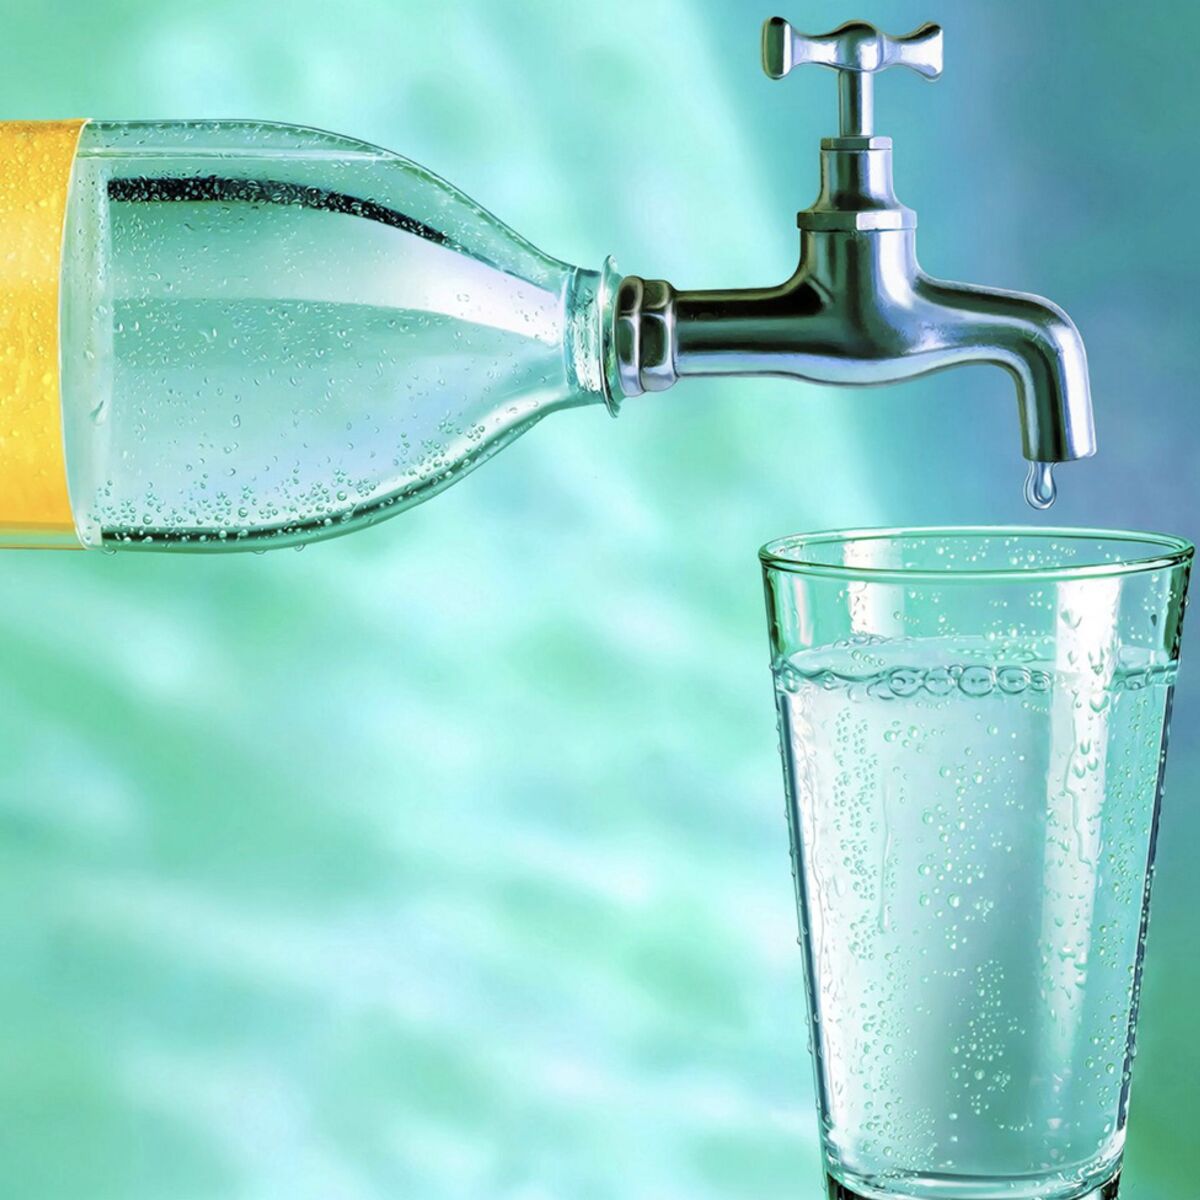 10 idées reçues sur l'eau du robinet et l'eau en bouteille : Femme Actuelle  Le MAG